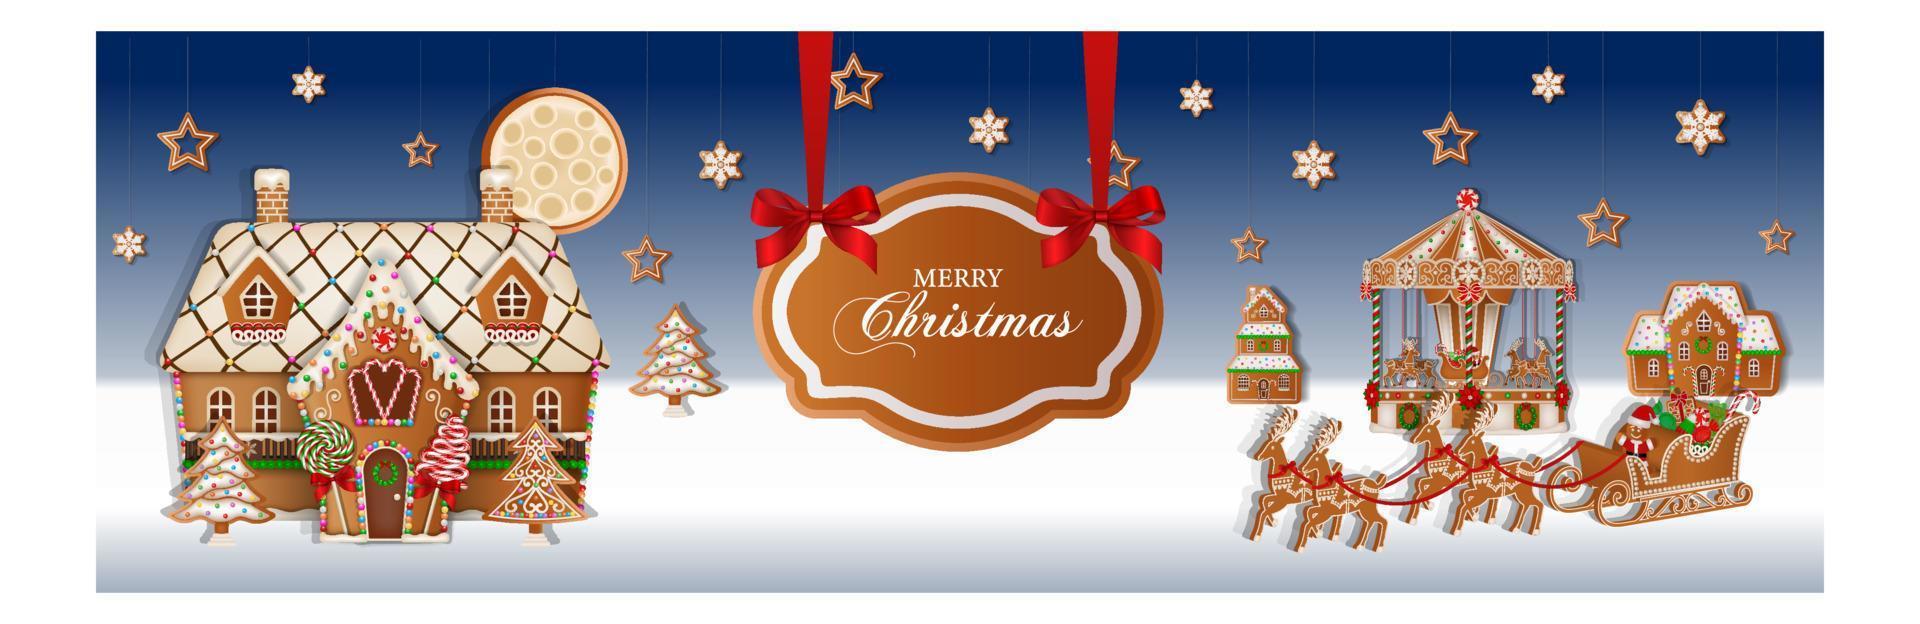 Kerstmis banier met peperkoek landschap. Kerstmis achtergrond met peperkoek koekjes en snoepjes vector